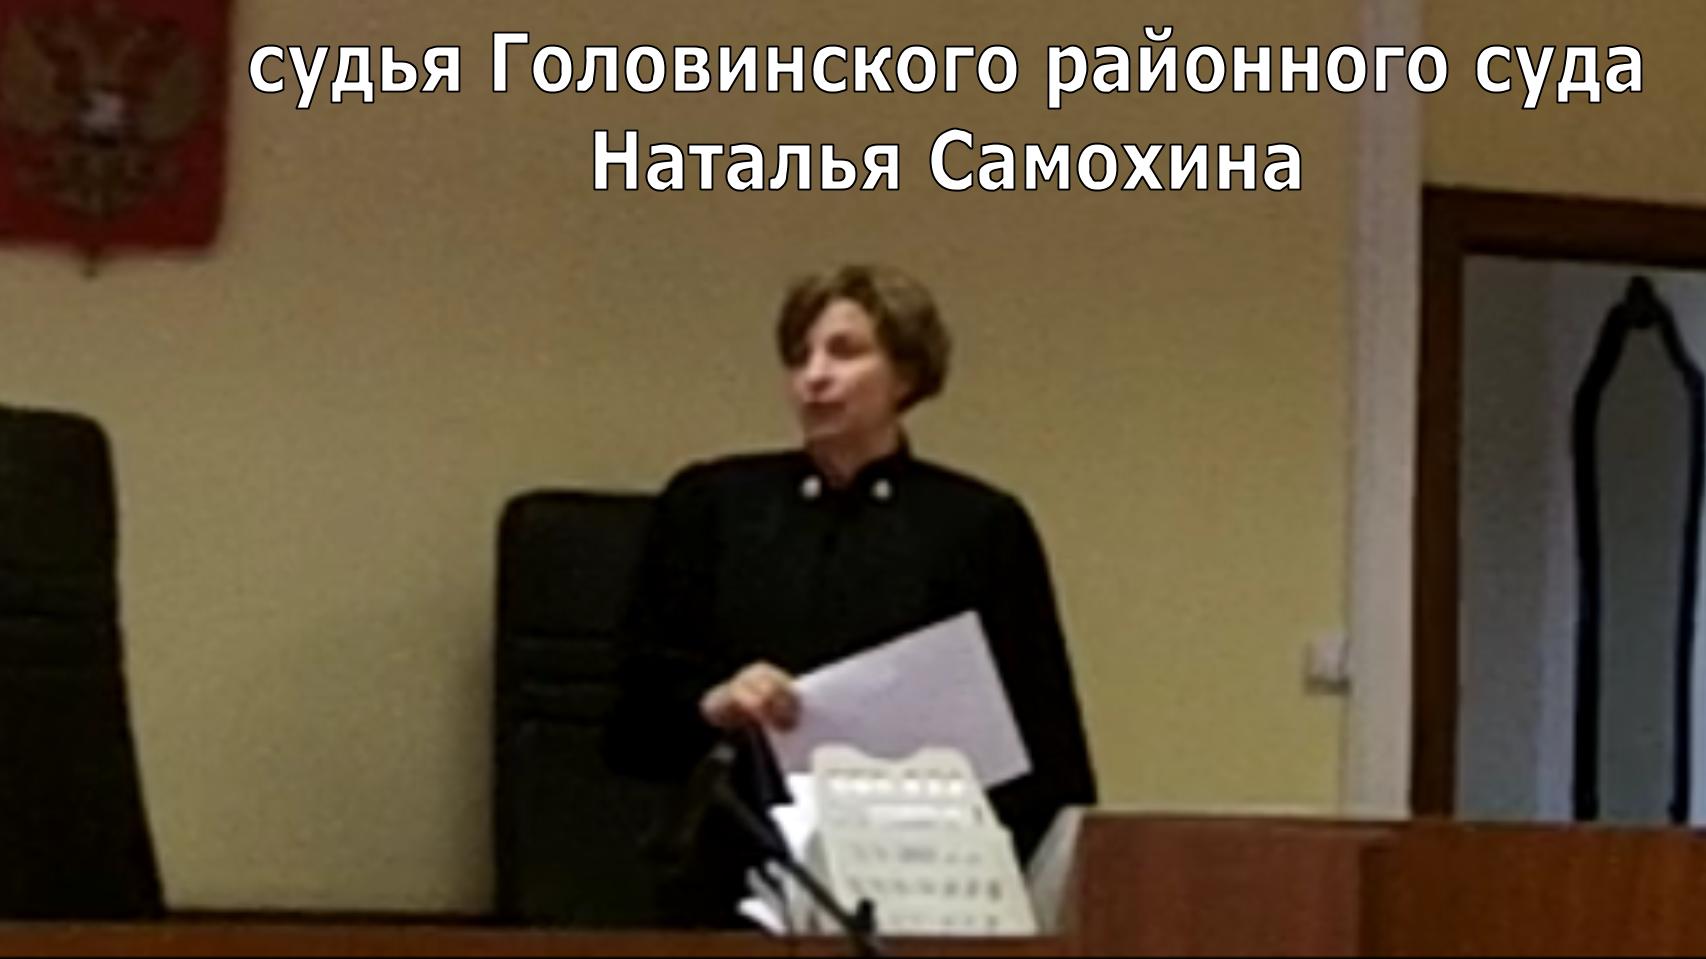 Сайт головинского районного суда города москвы